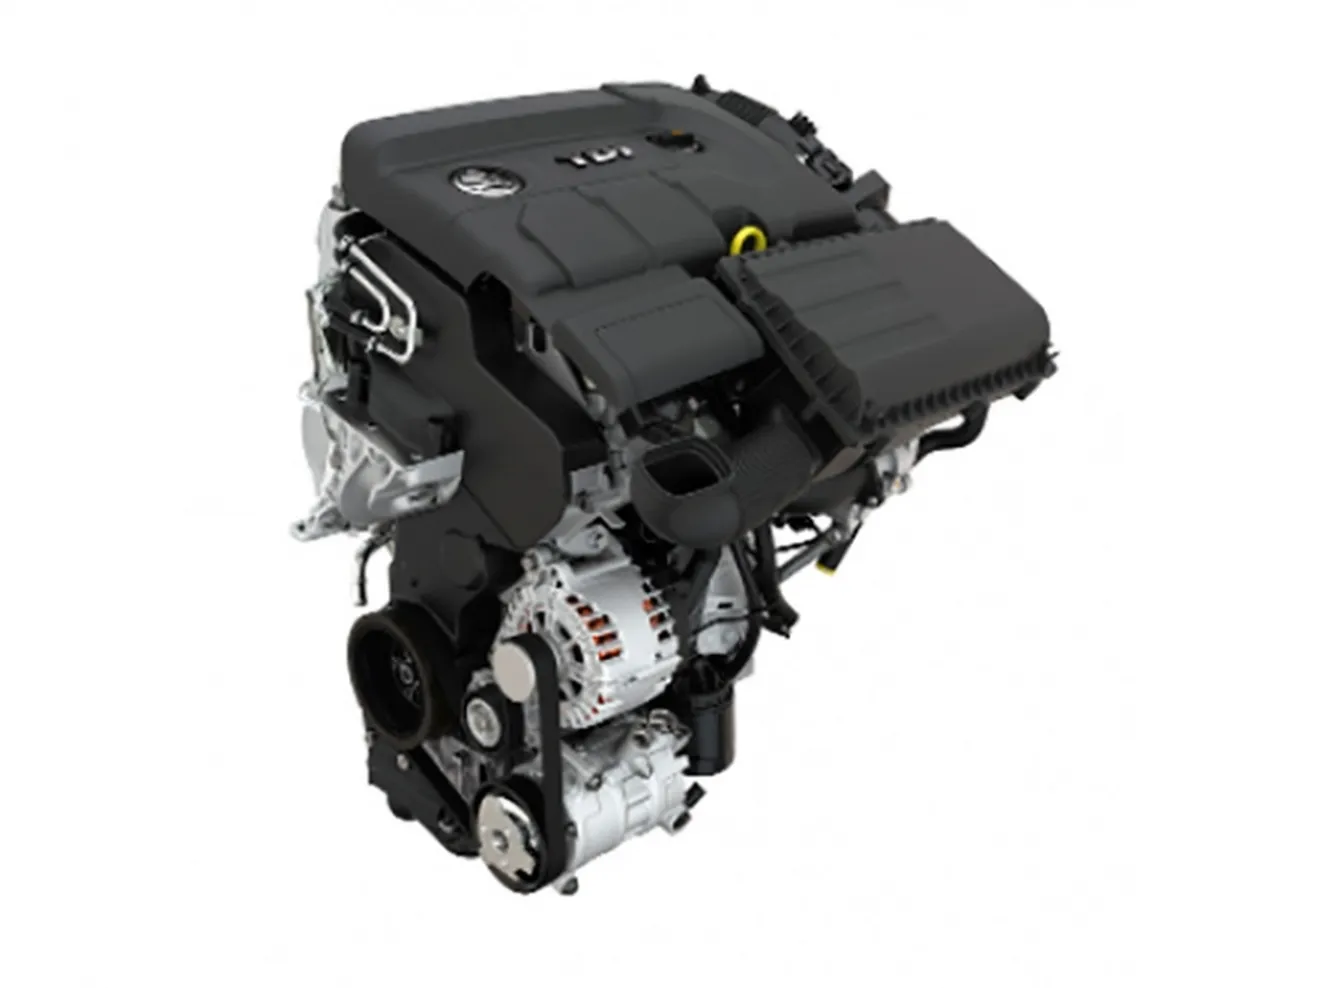 Skoda Fabia 2015, nueva gama de motores más eficientes